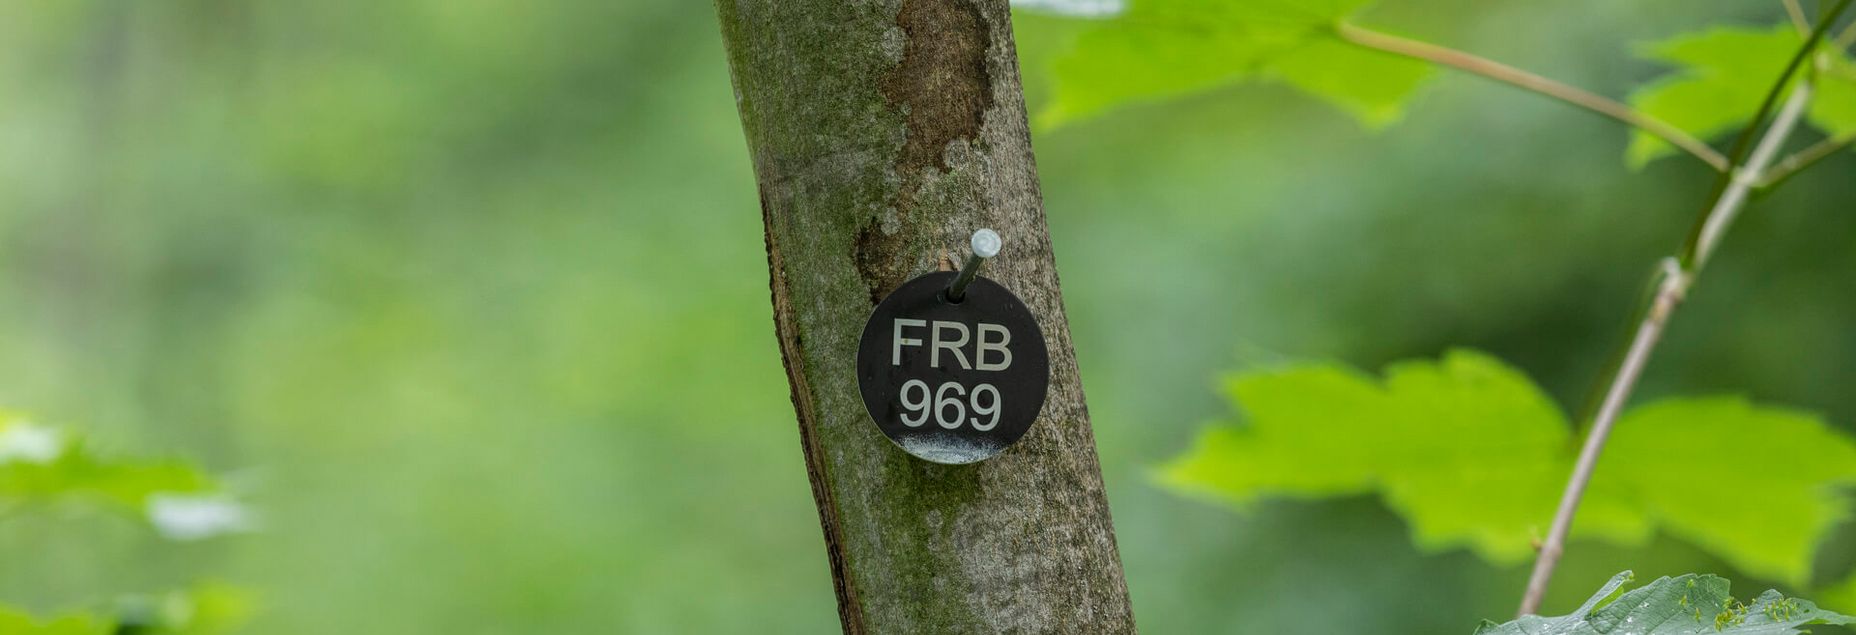 FRB 969 - Plakette